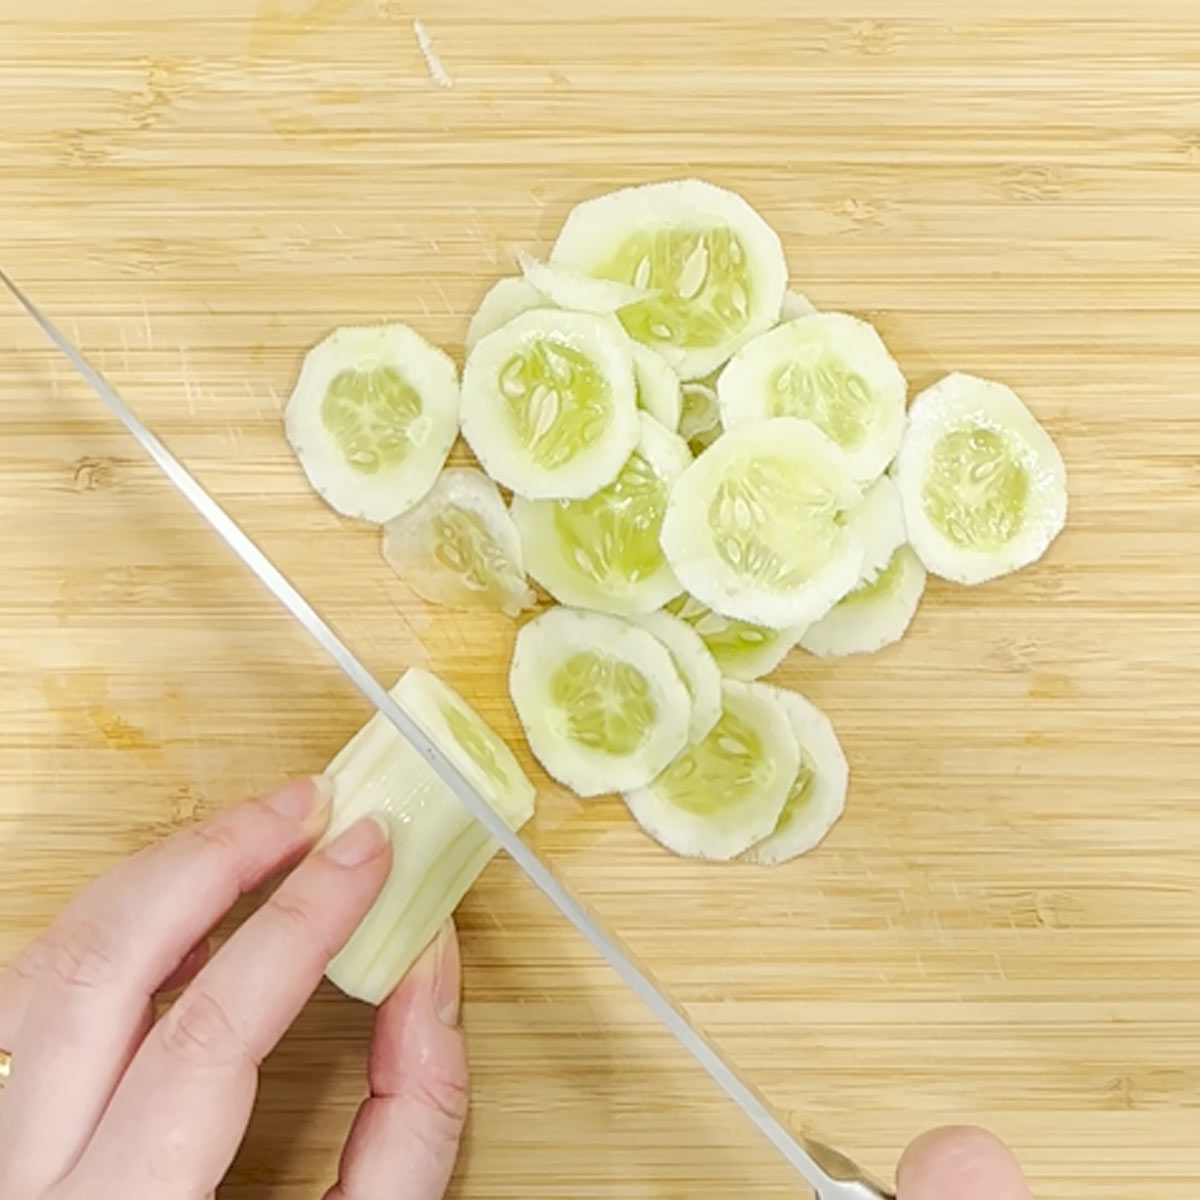 slicing cucumber